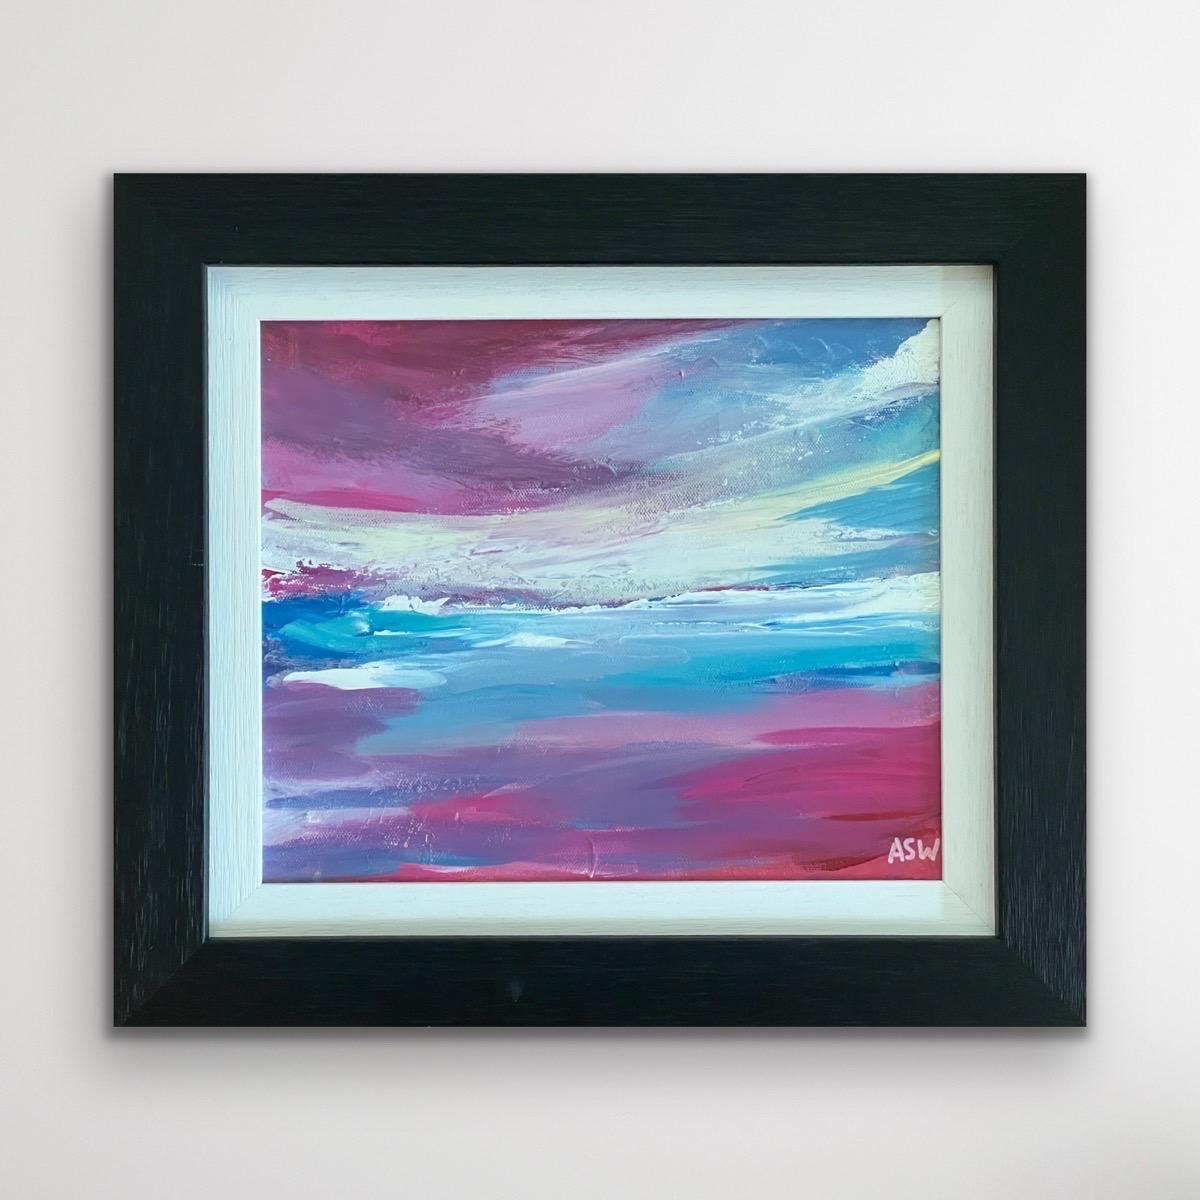 Peinture abstraite de paysage marin avec ciel rose et bleu par un artiste britannique - Painting de Angela Wakefield